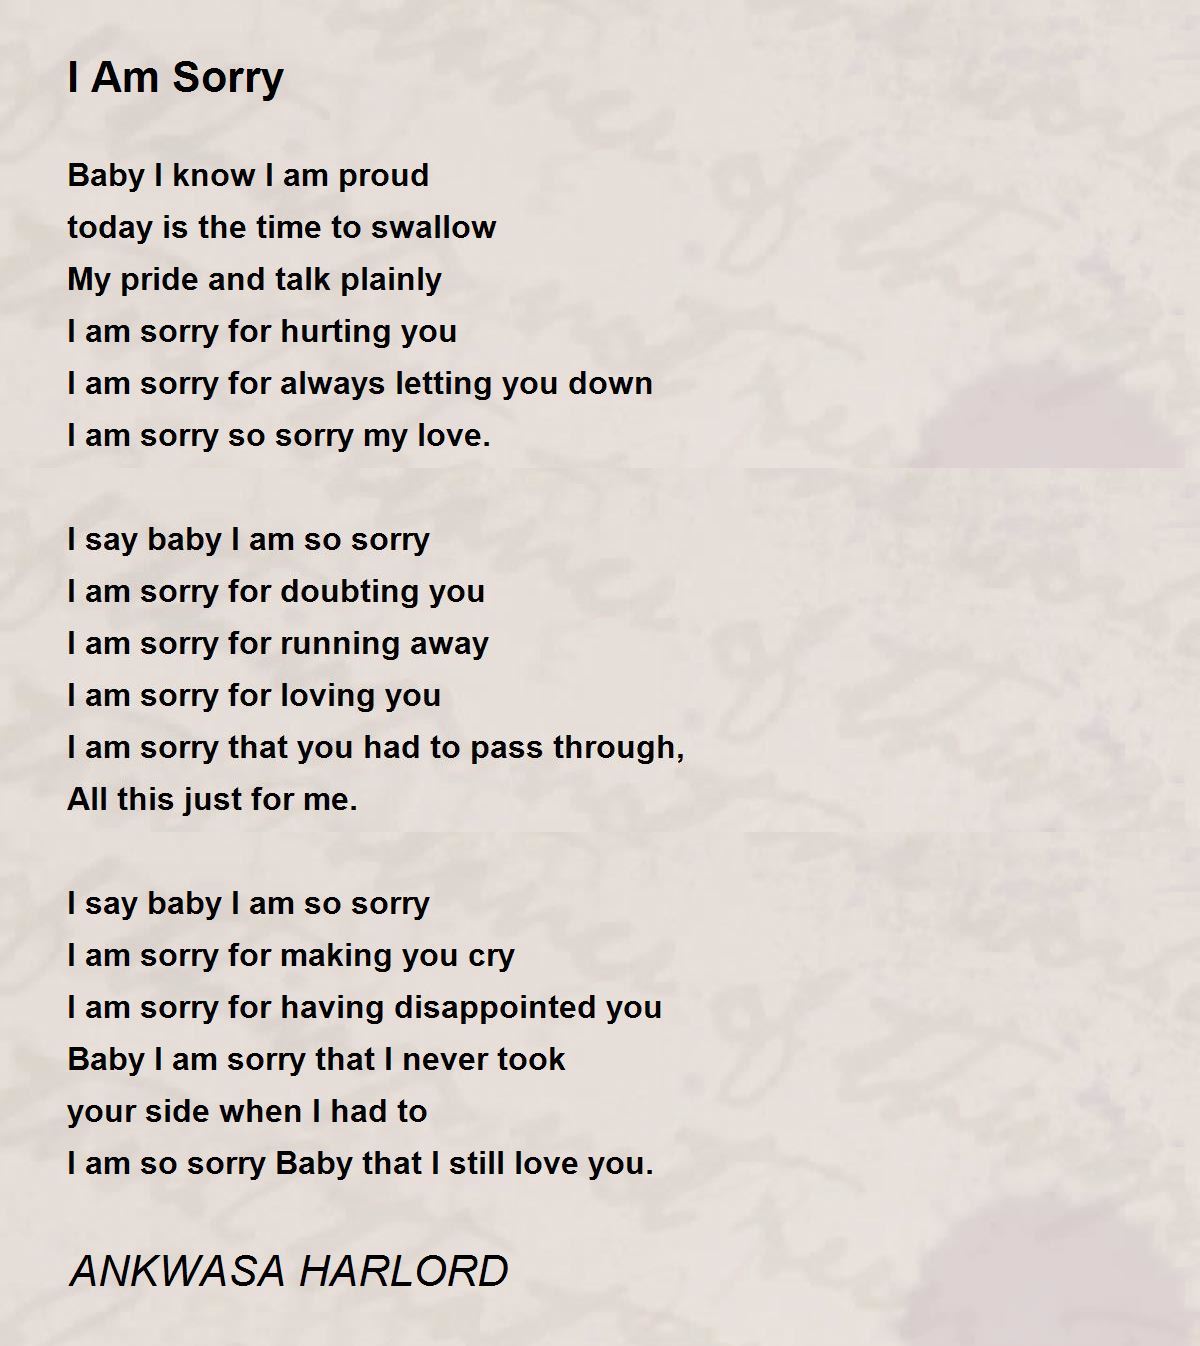 I Am Sorry - I Am Sorry Poem by ANKWASA HARLORD